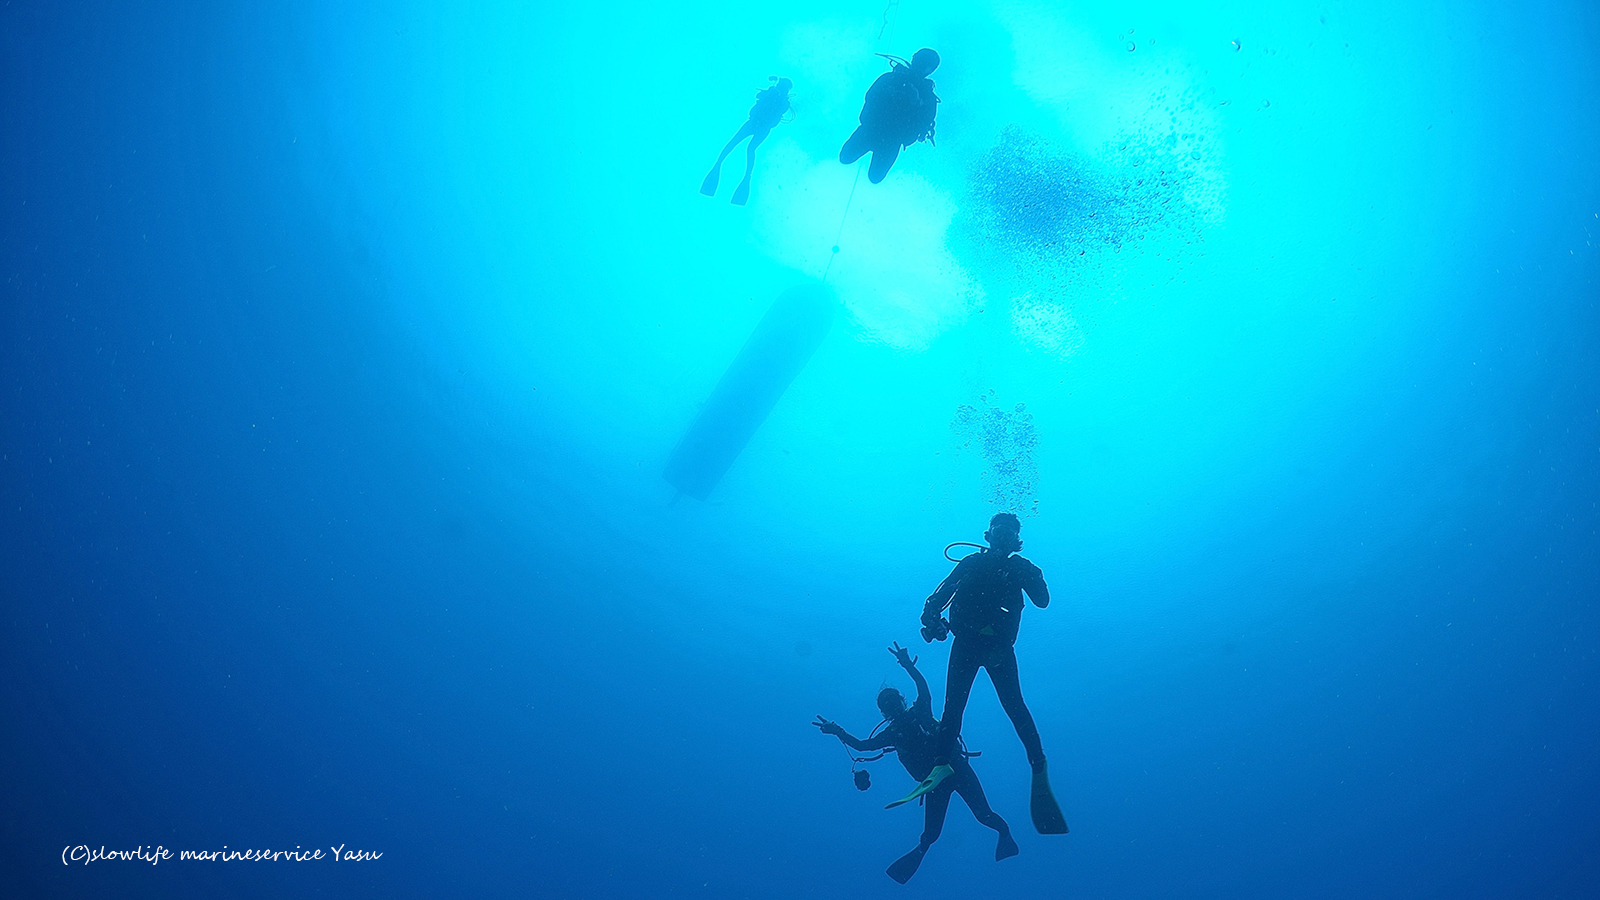 透明度抜群の沖縄の海でダイビング＠恩納村・北部遠征